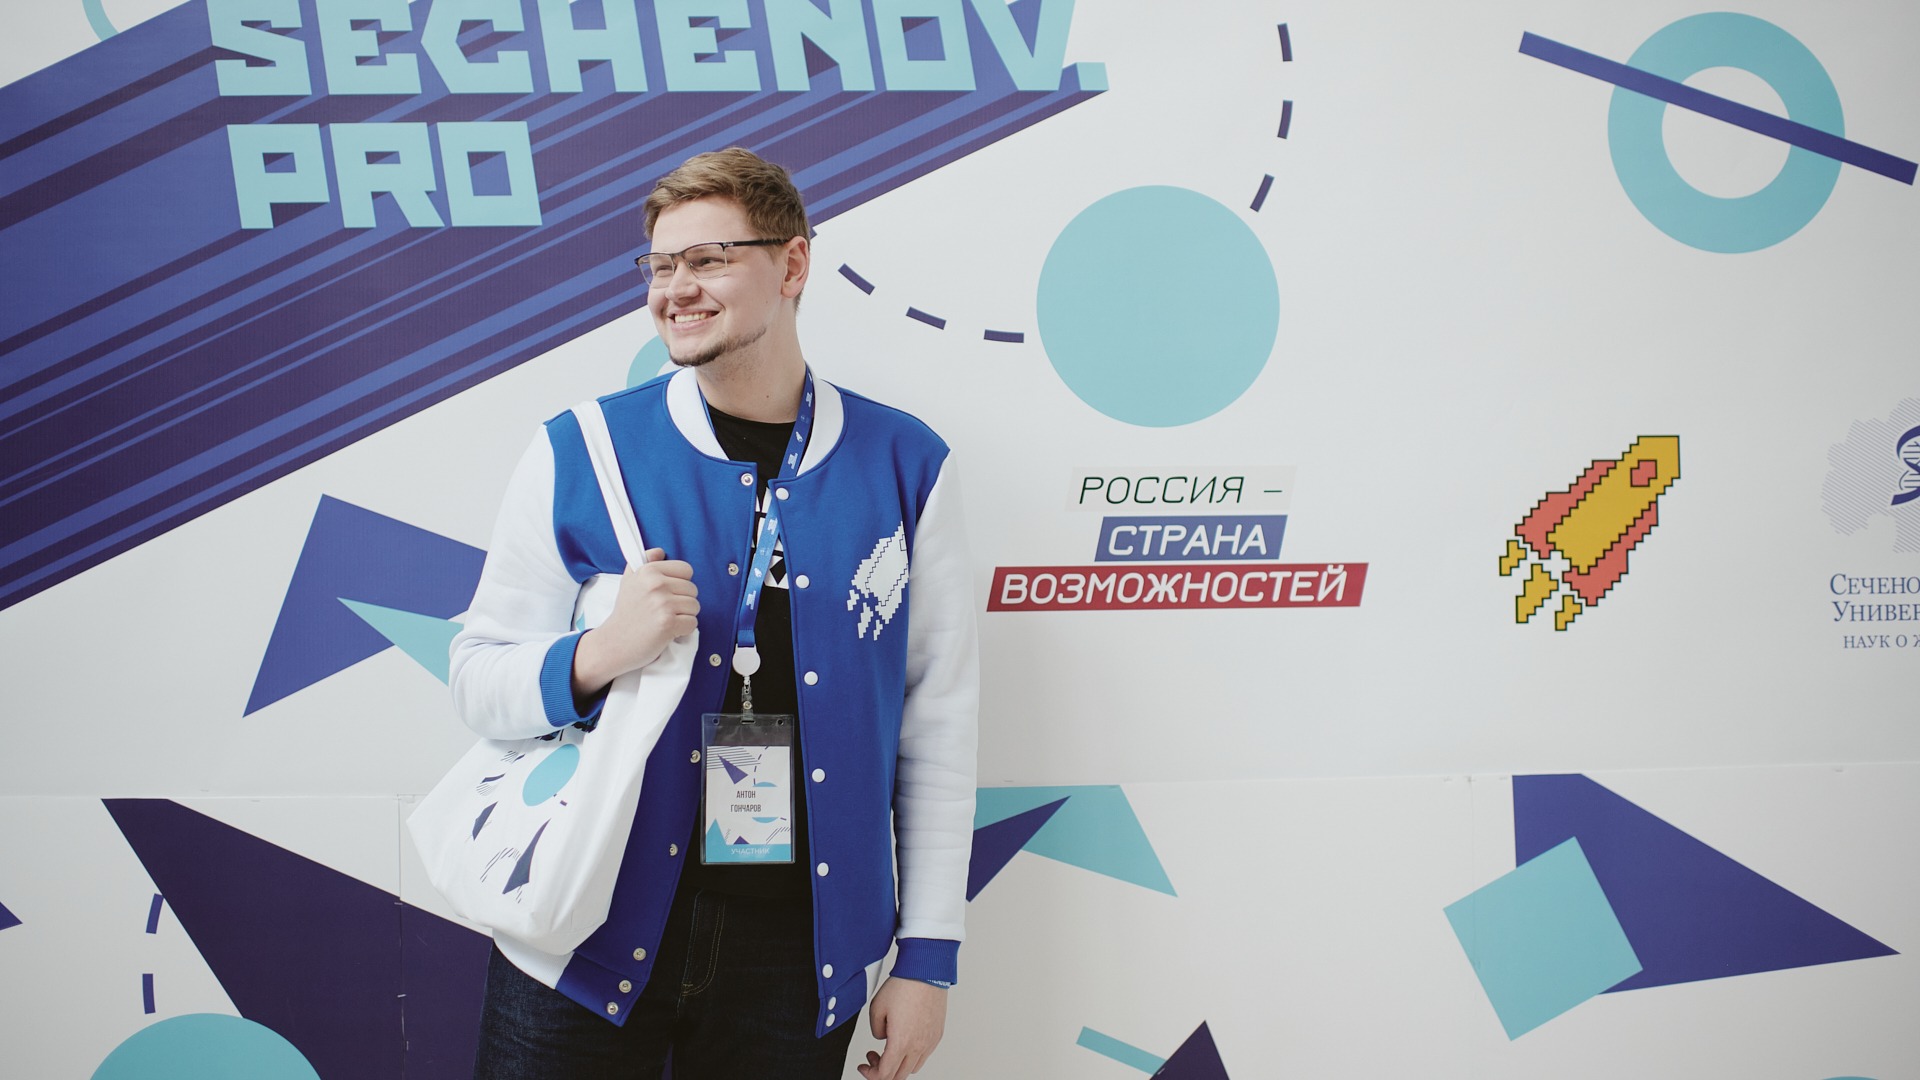 Образовательный форум Sechenov.Pro для участников олимпиады «Я – профессионал» объединил более 100 студентов-медиков 